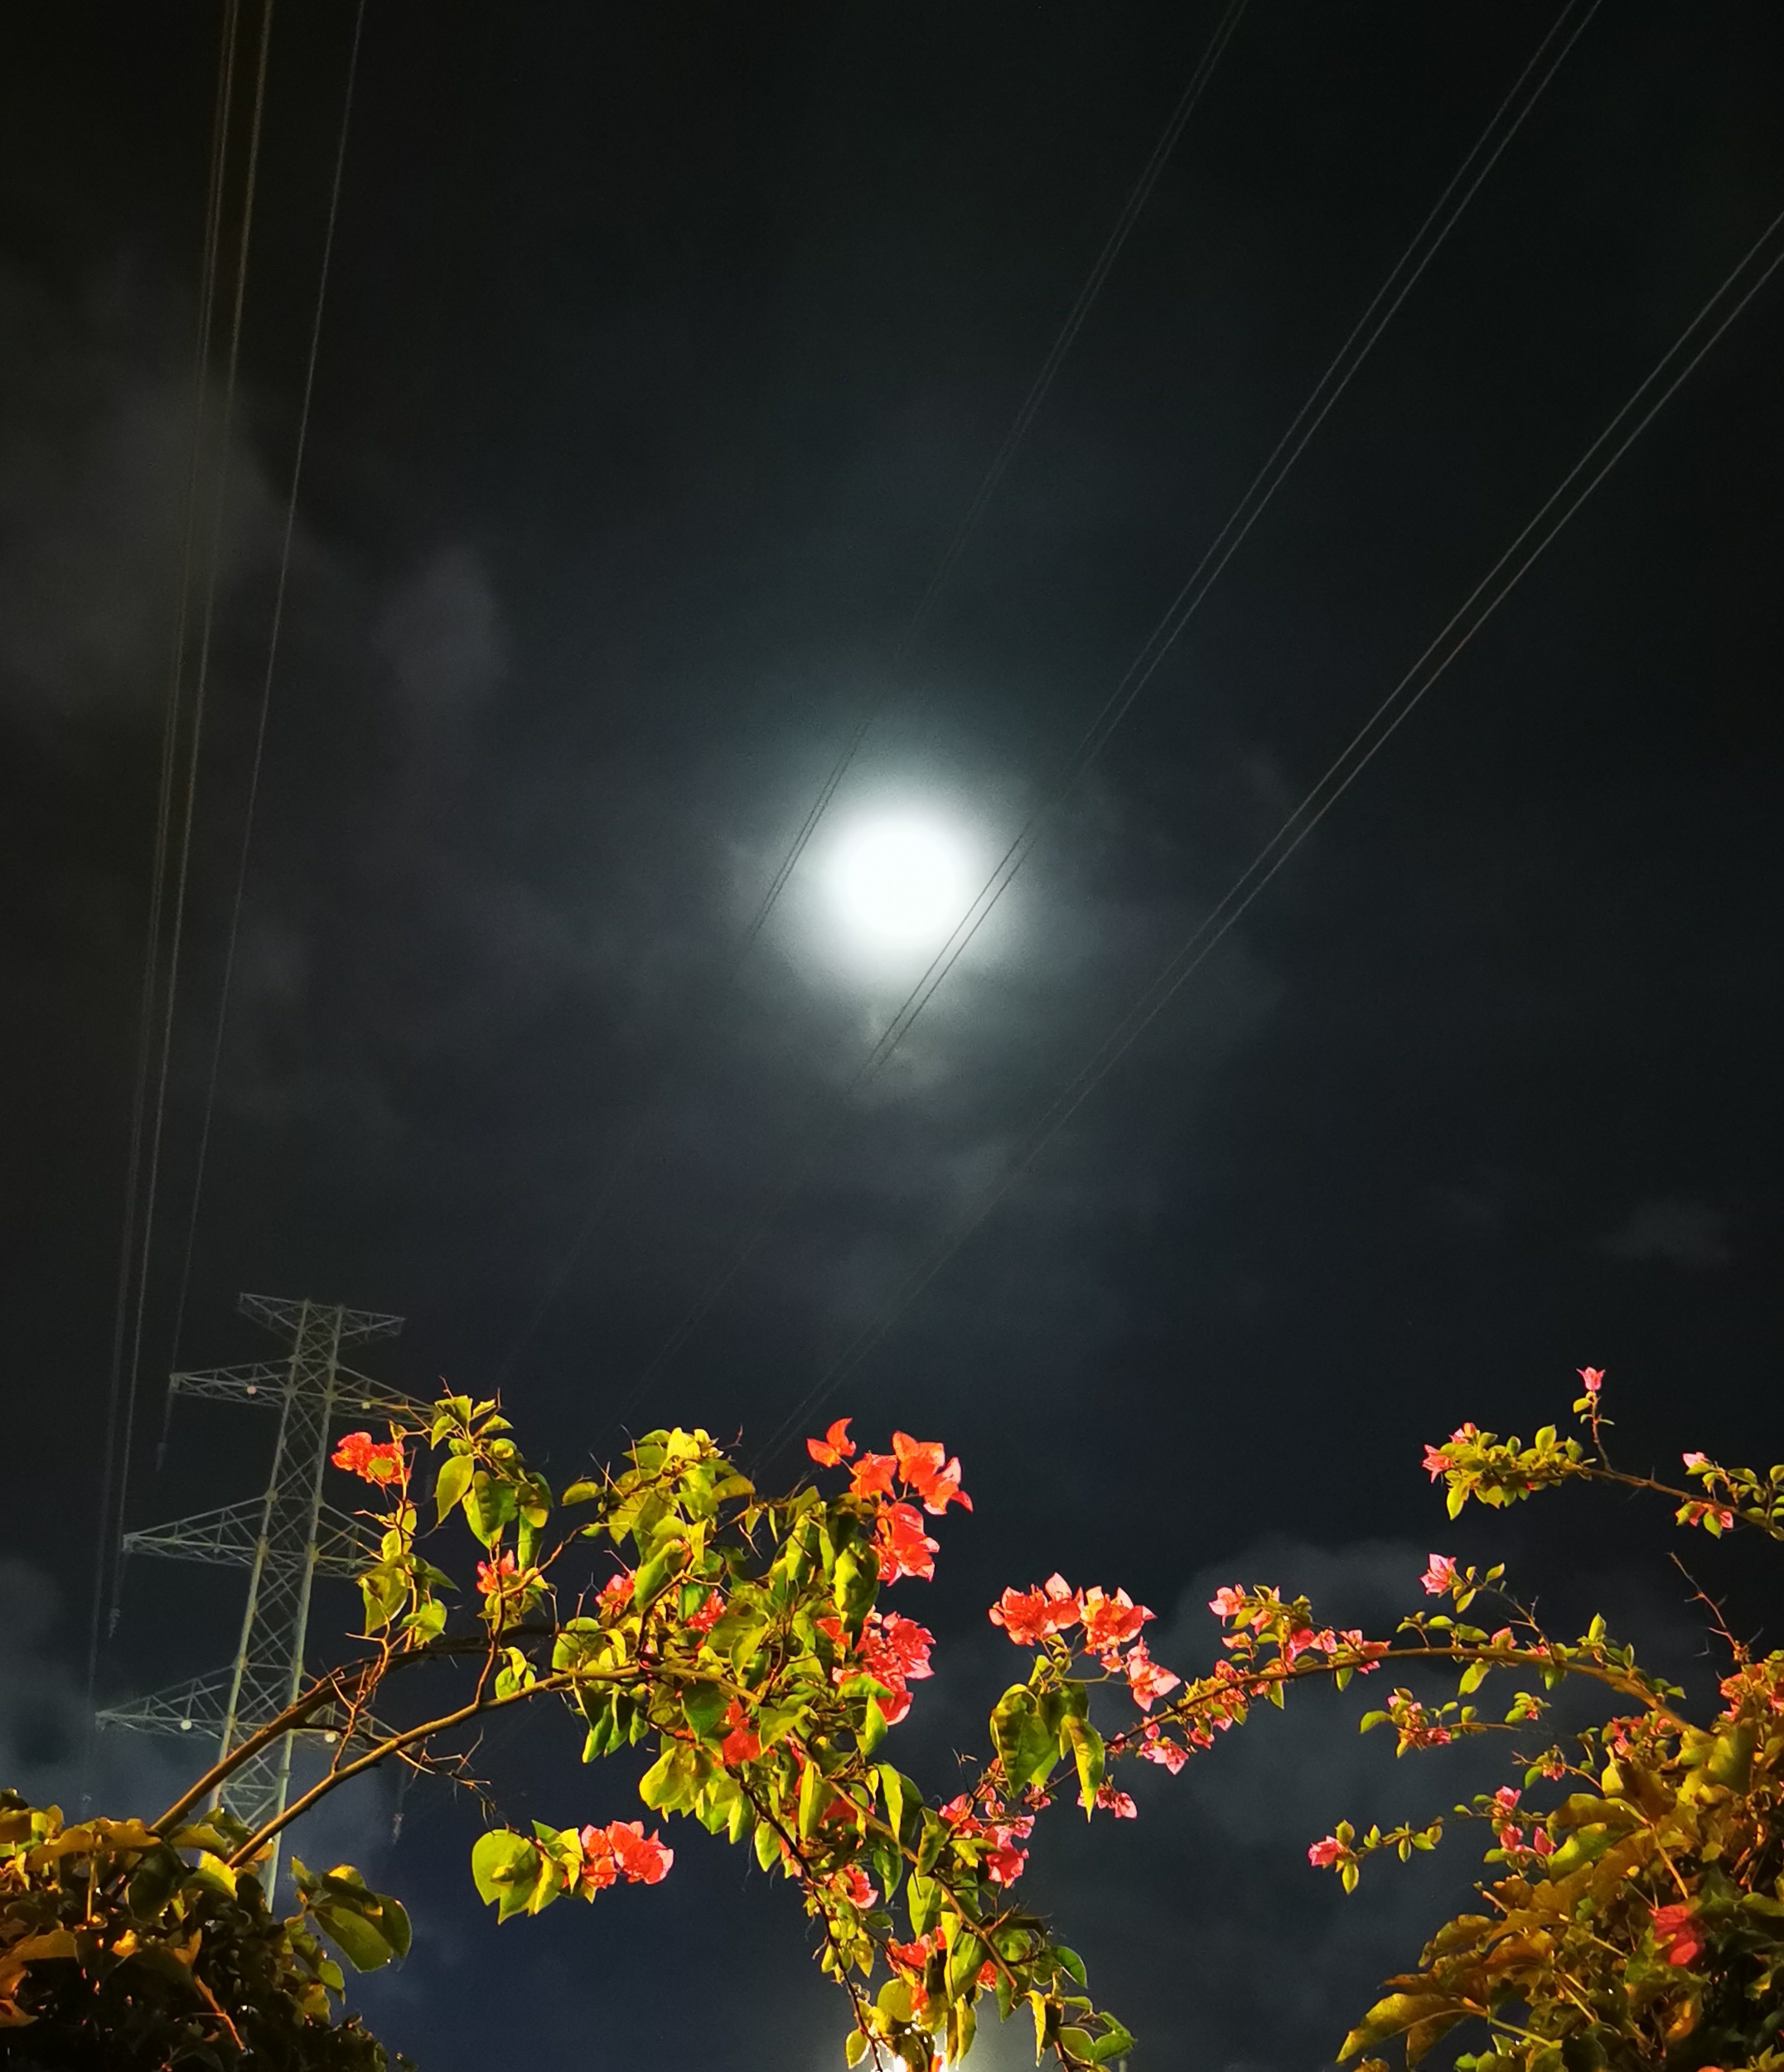 月圆之夜图片 真实图片